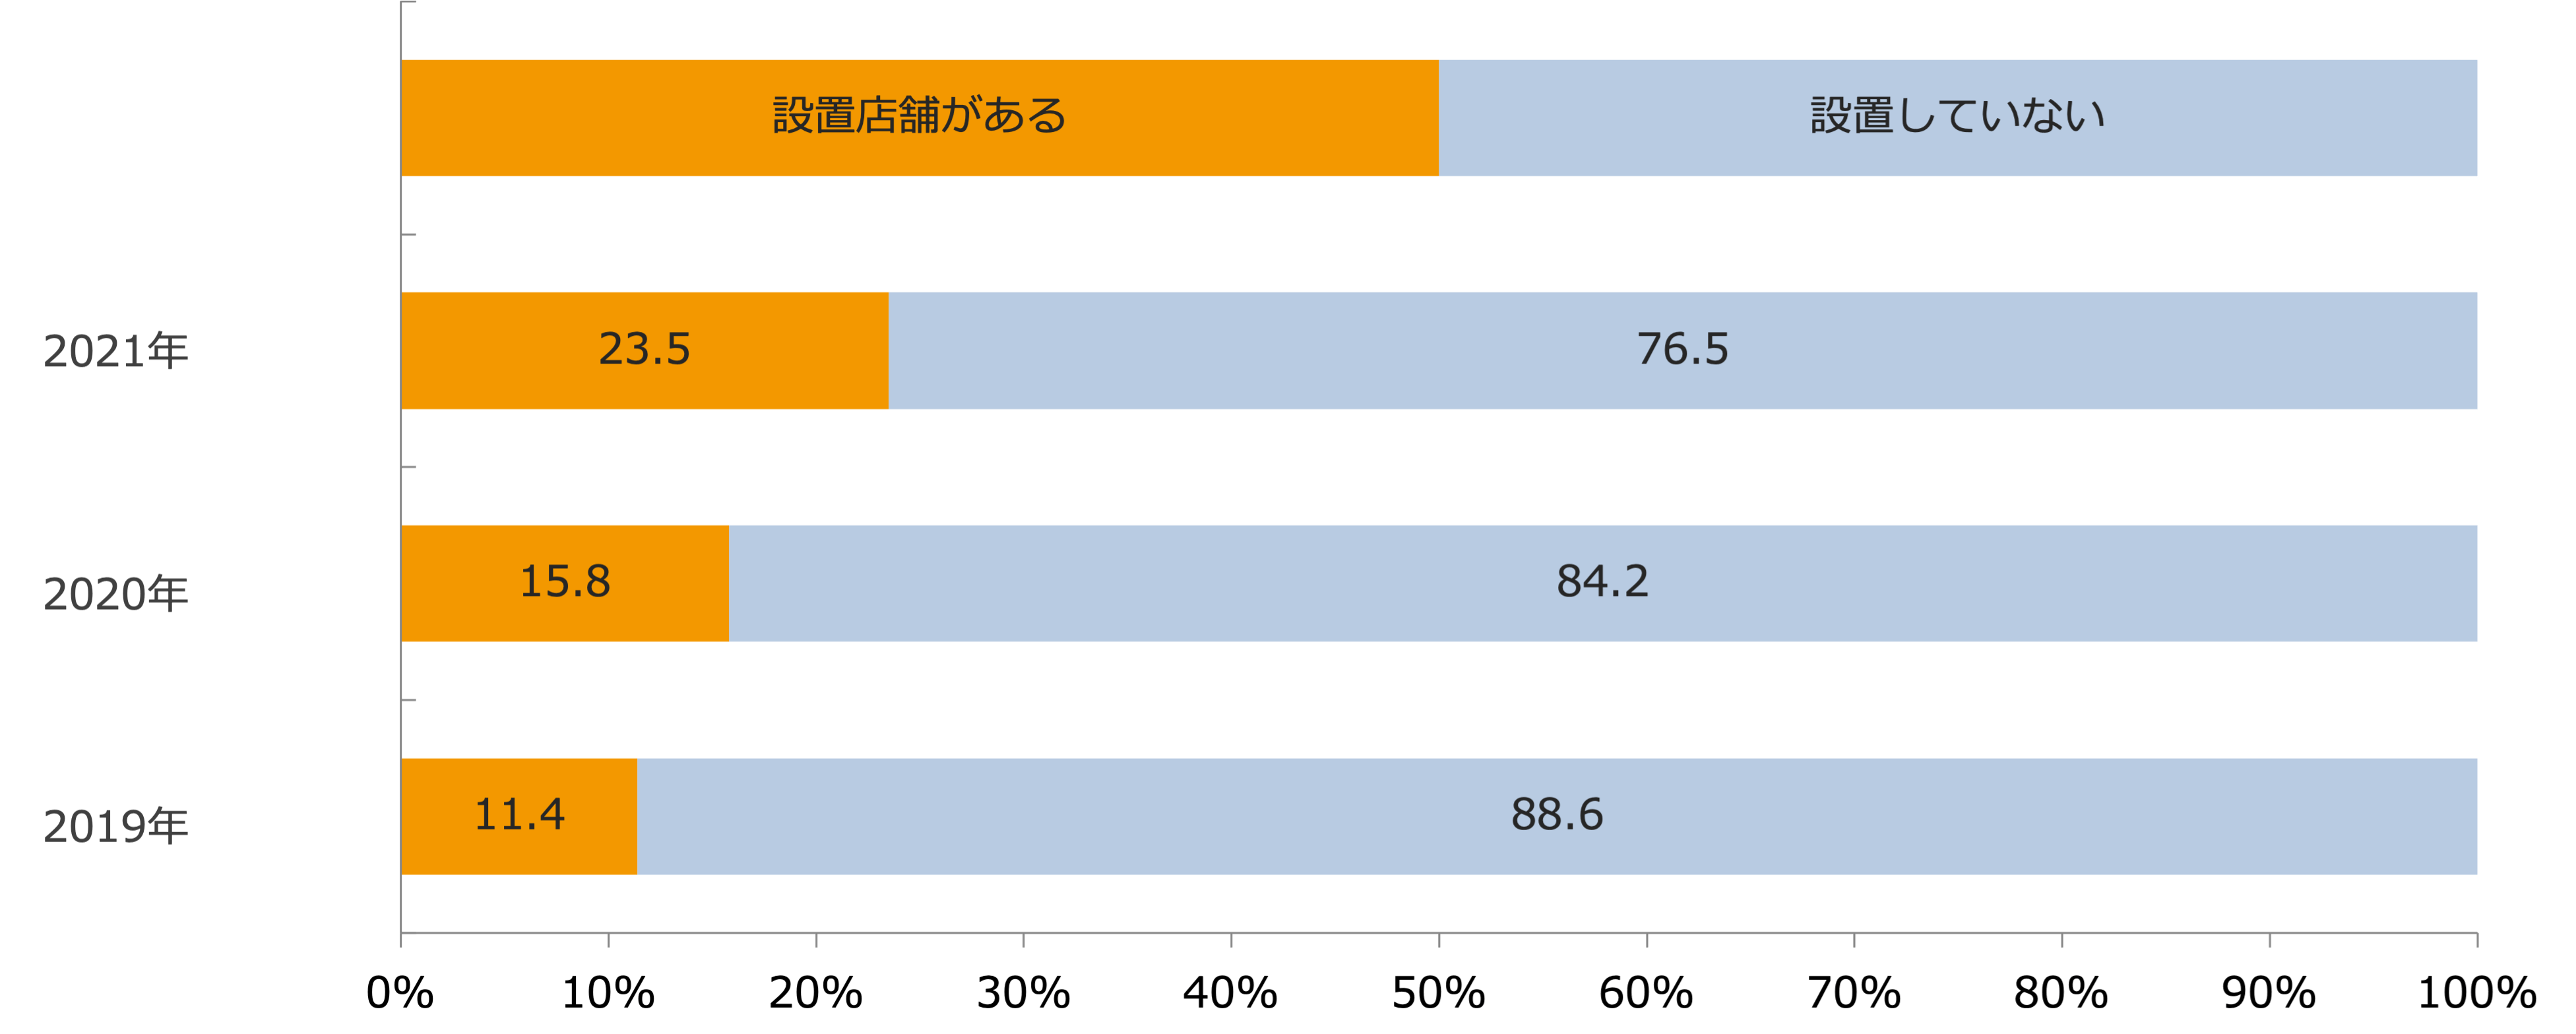 セルフレジ設置状況（経年比較）/業界推計値